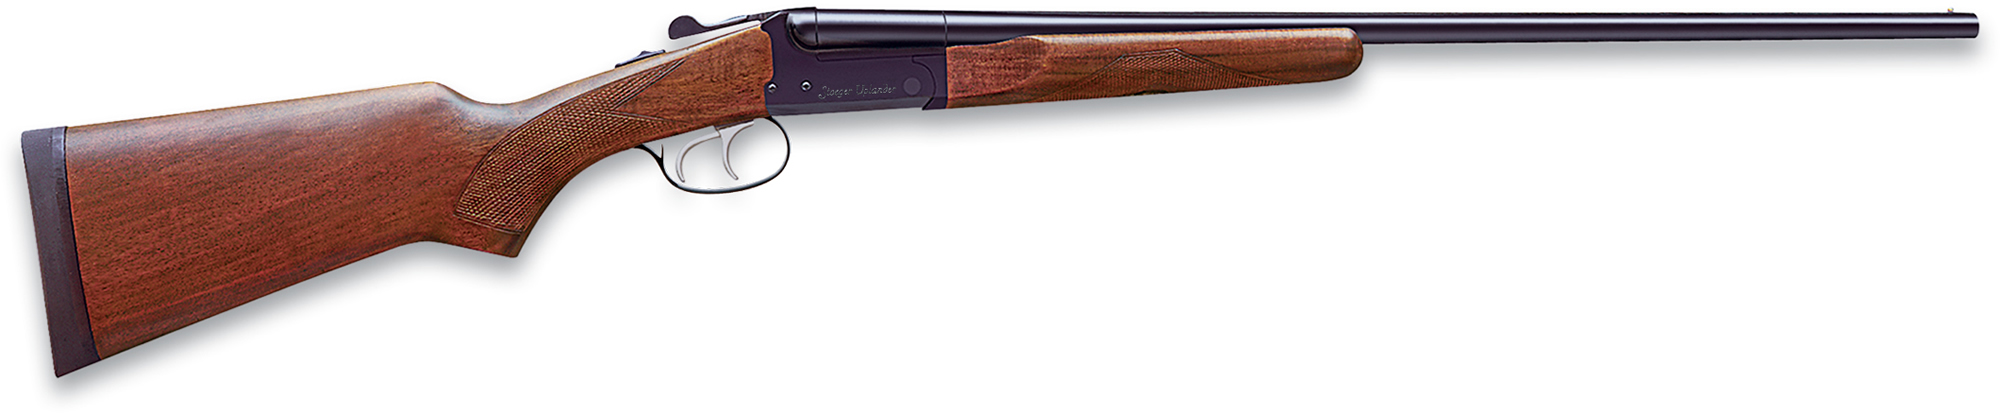 Stoeger Uplander Youth Short Side x Side Shotgun ST31130, 20 Gauge, 22", 3" Chmbr, A Grade Stock